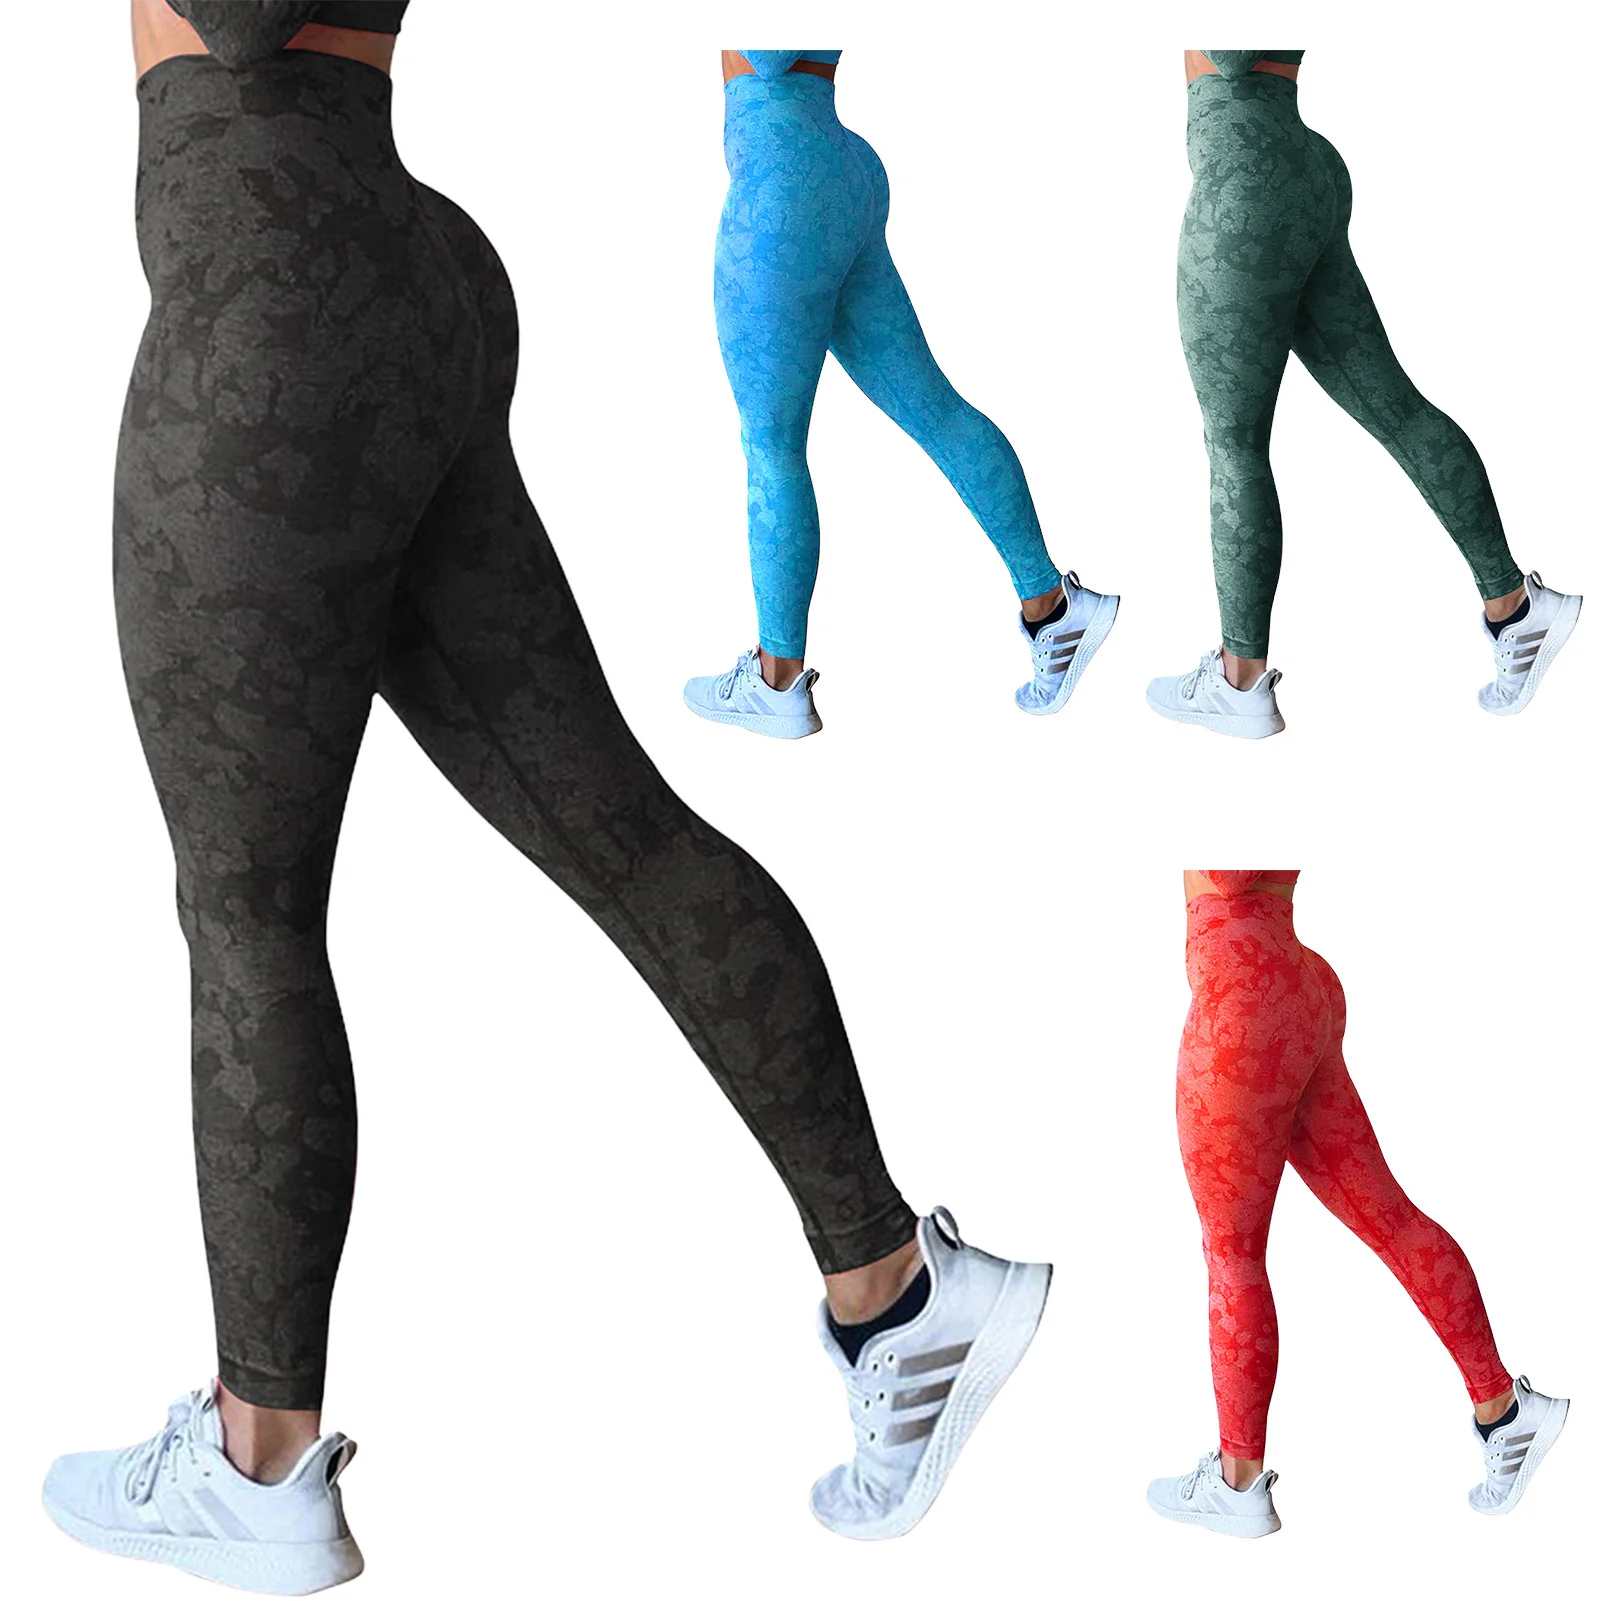 

Женские камуфляжные бесшовные леггинсы, спортивные эластичные штаны с высокой талией для занятий спортом, фитнесом и йогой